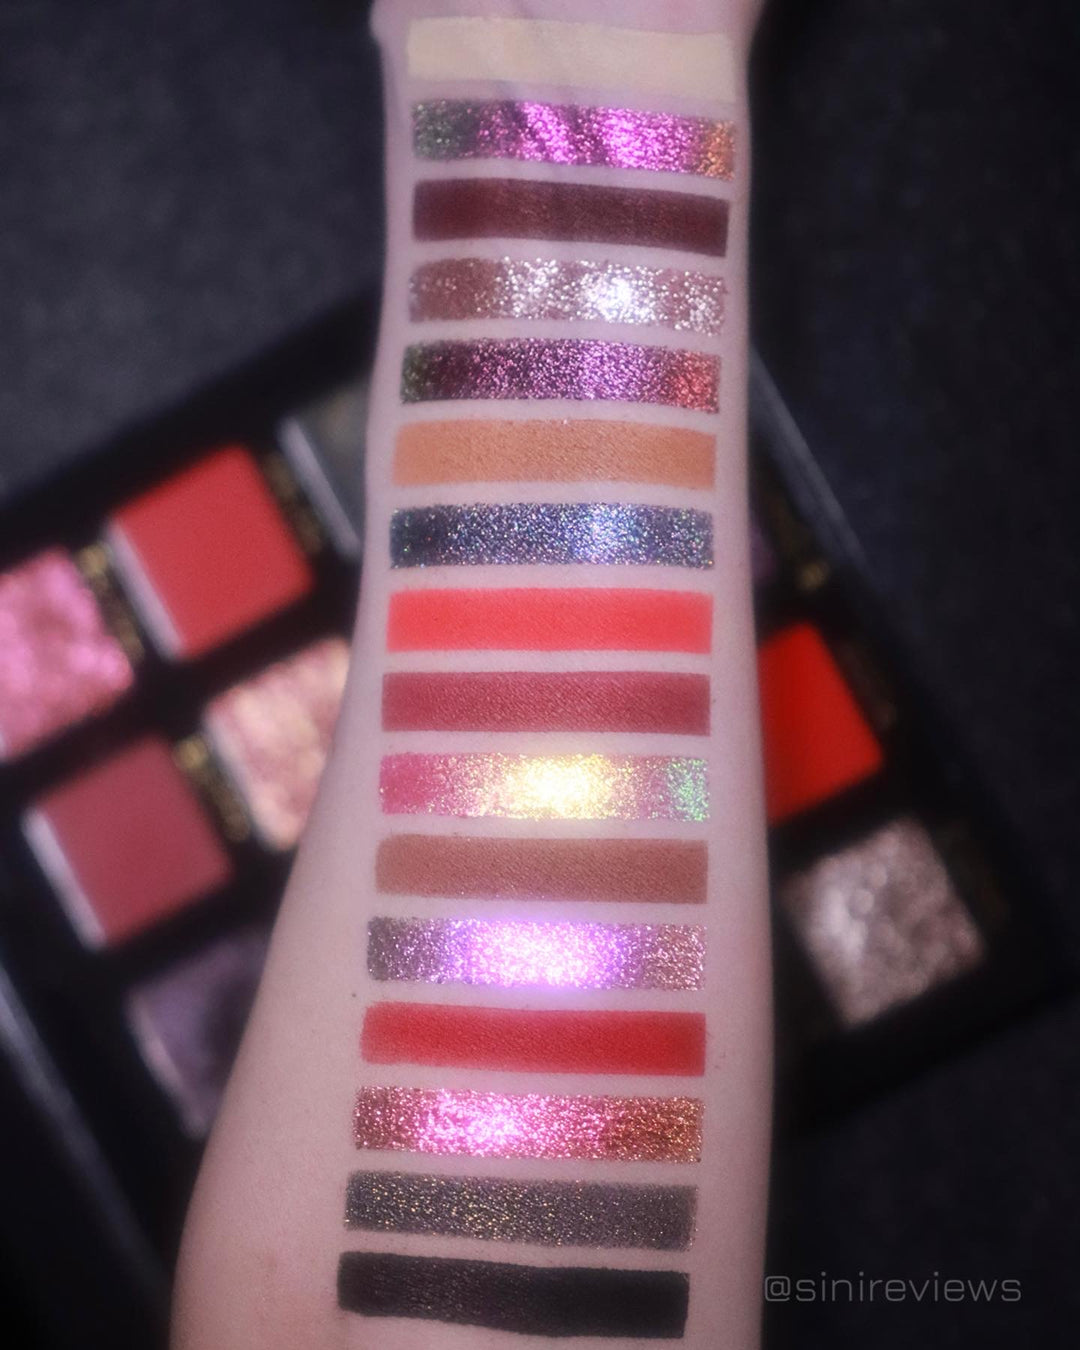 Multichrome Valentine’s Day gift glitter eyeshadow palette